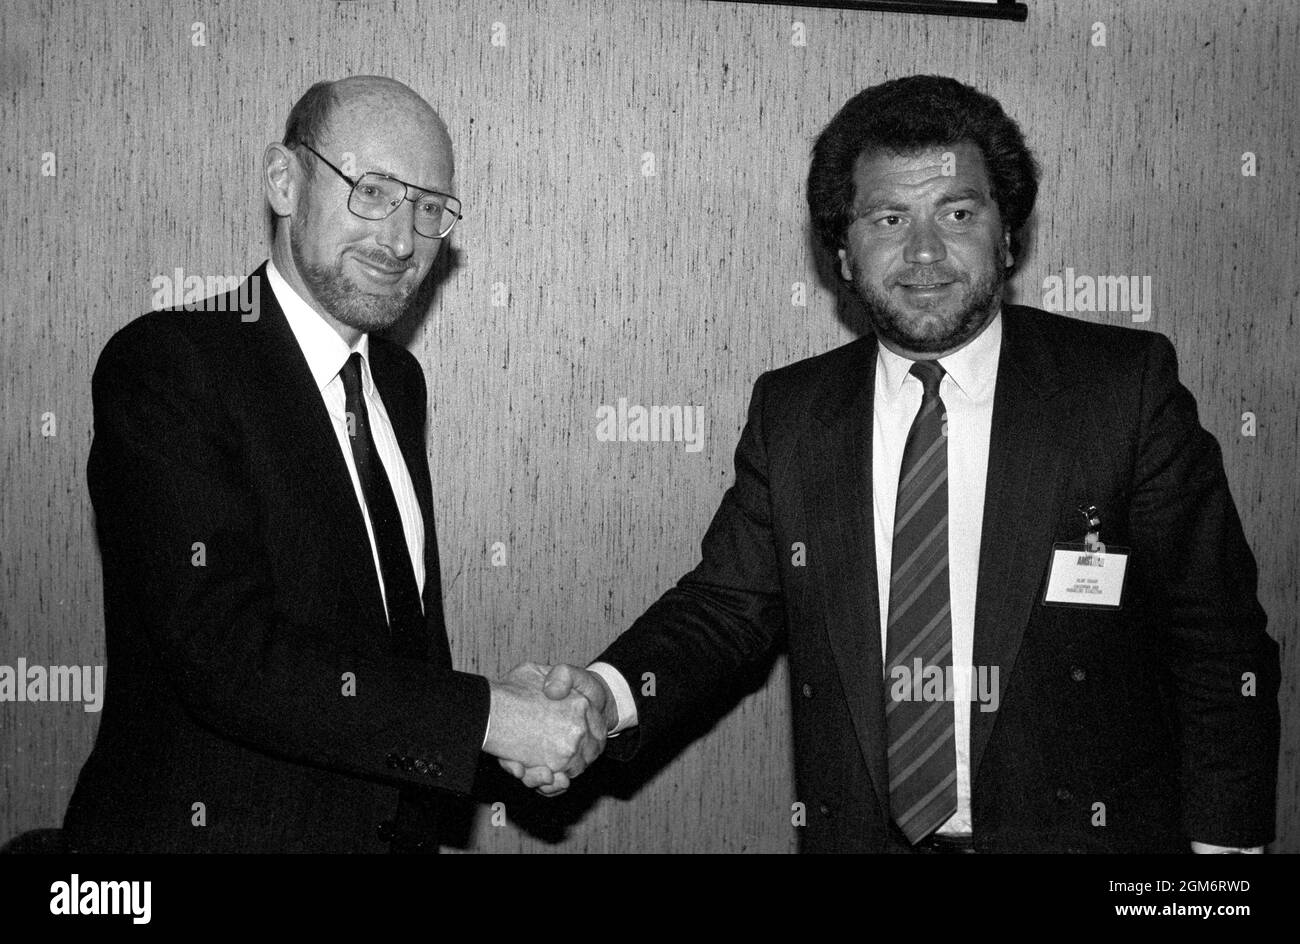 Photo du dossier datée du 07/04/86 de Sir Clive Sinclair, (à gauche) entre les mains de Sir Alan Sugar, directeur d'Amstrad Consumer Electronics plc, après avoir annoncé qu'Amstrad avait acheté tous les droits de vendre Sinclair Computers dans le monde entier dans le cadre d'un contrat de 5 millions de livres sterling. Sir Clive Sinclair, pionnier de l'informatique domestique, est décédé à l'âge de 81 ans. Date de publication : vendredi 17 septembre 2021. Banque D'Images